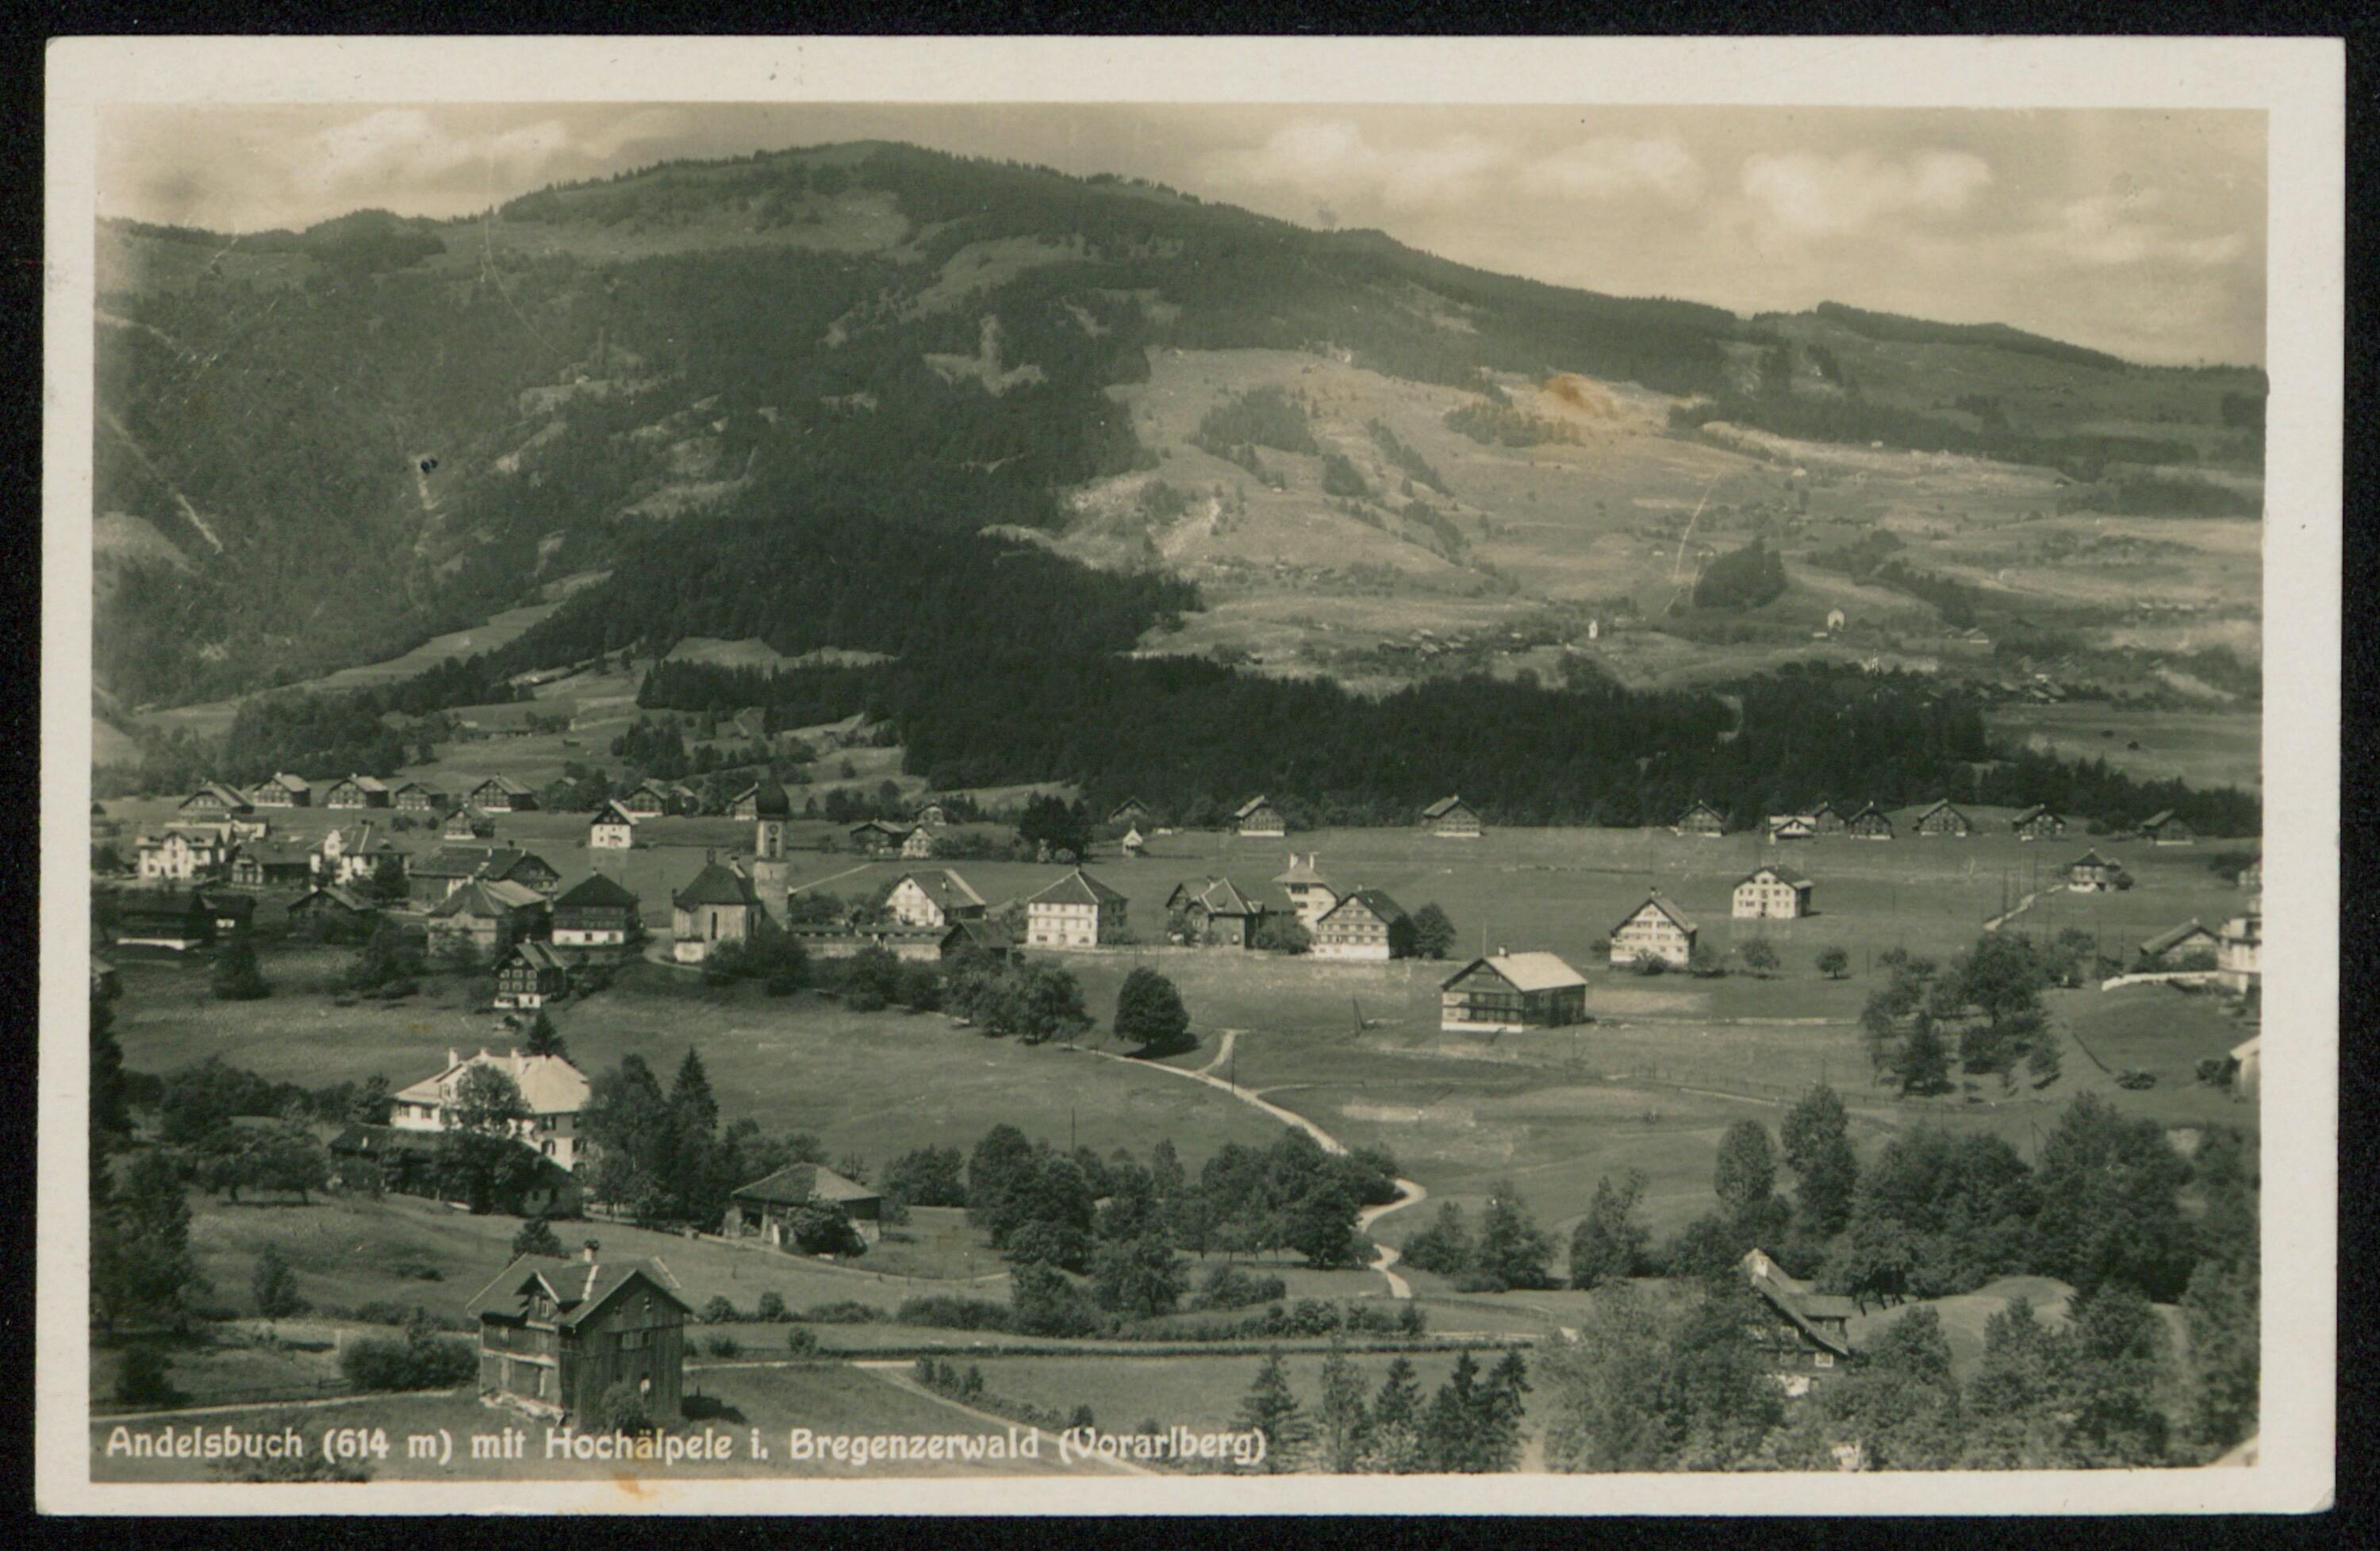 Andelsbuch (614 m) mit Hochälpele i. Bregenzerwald (Vorarlberg)></div>


    <hr>
    <div class=